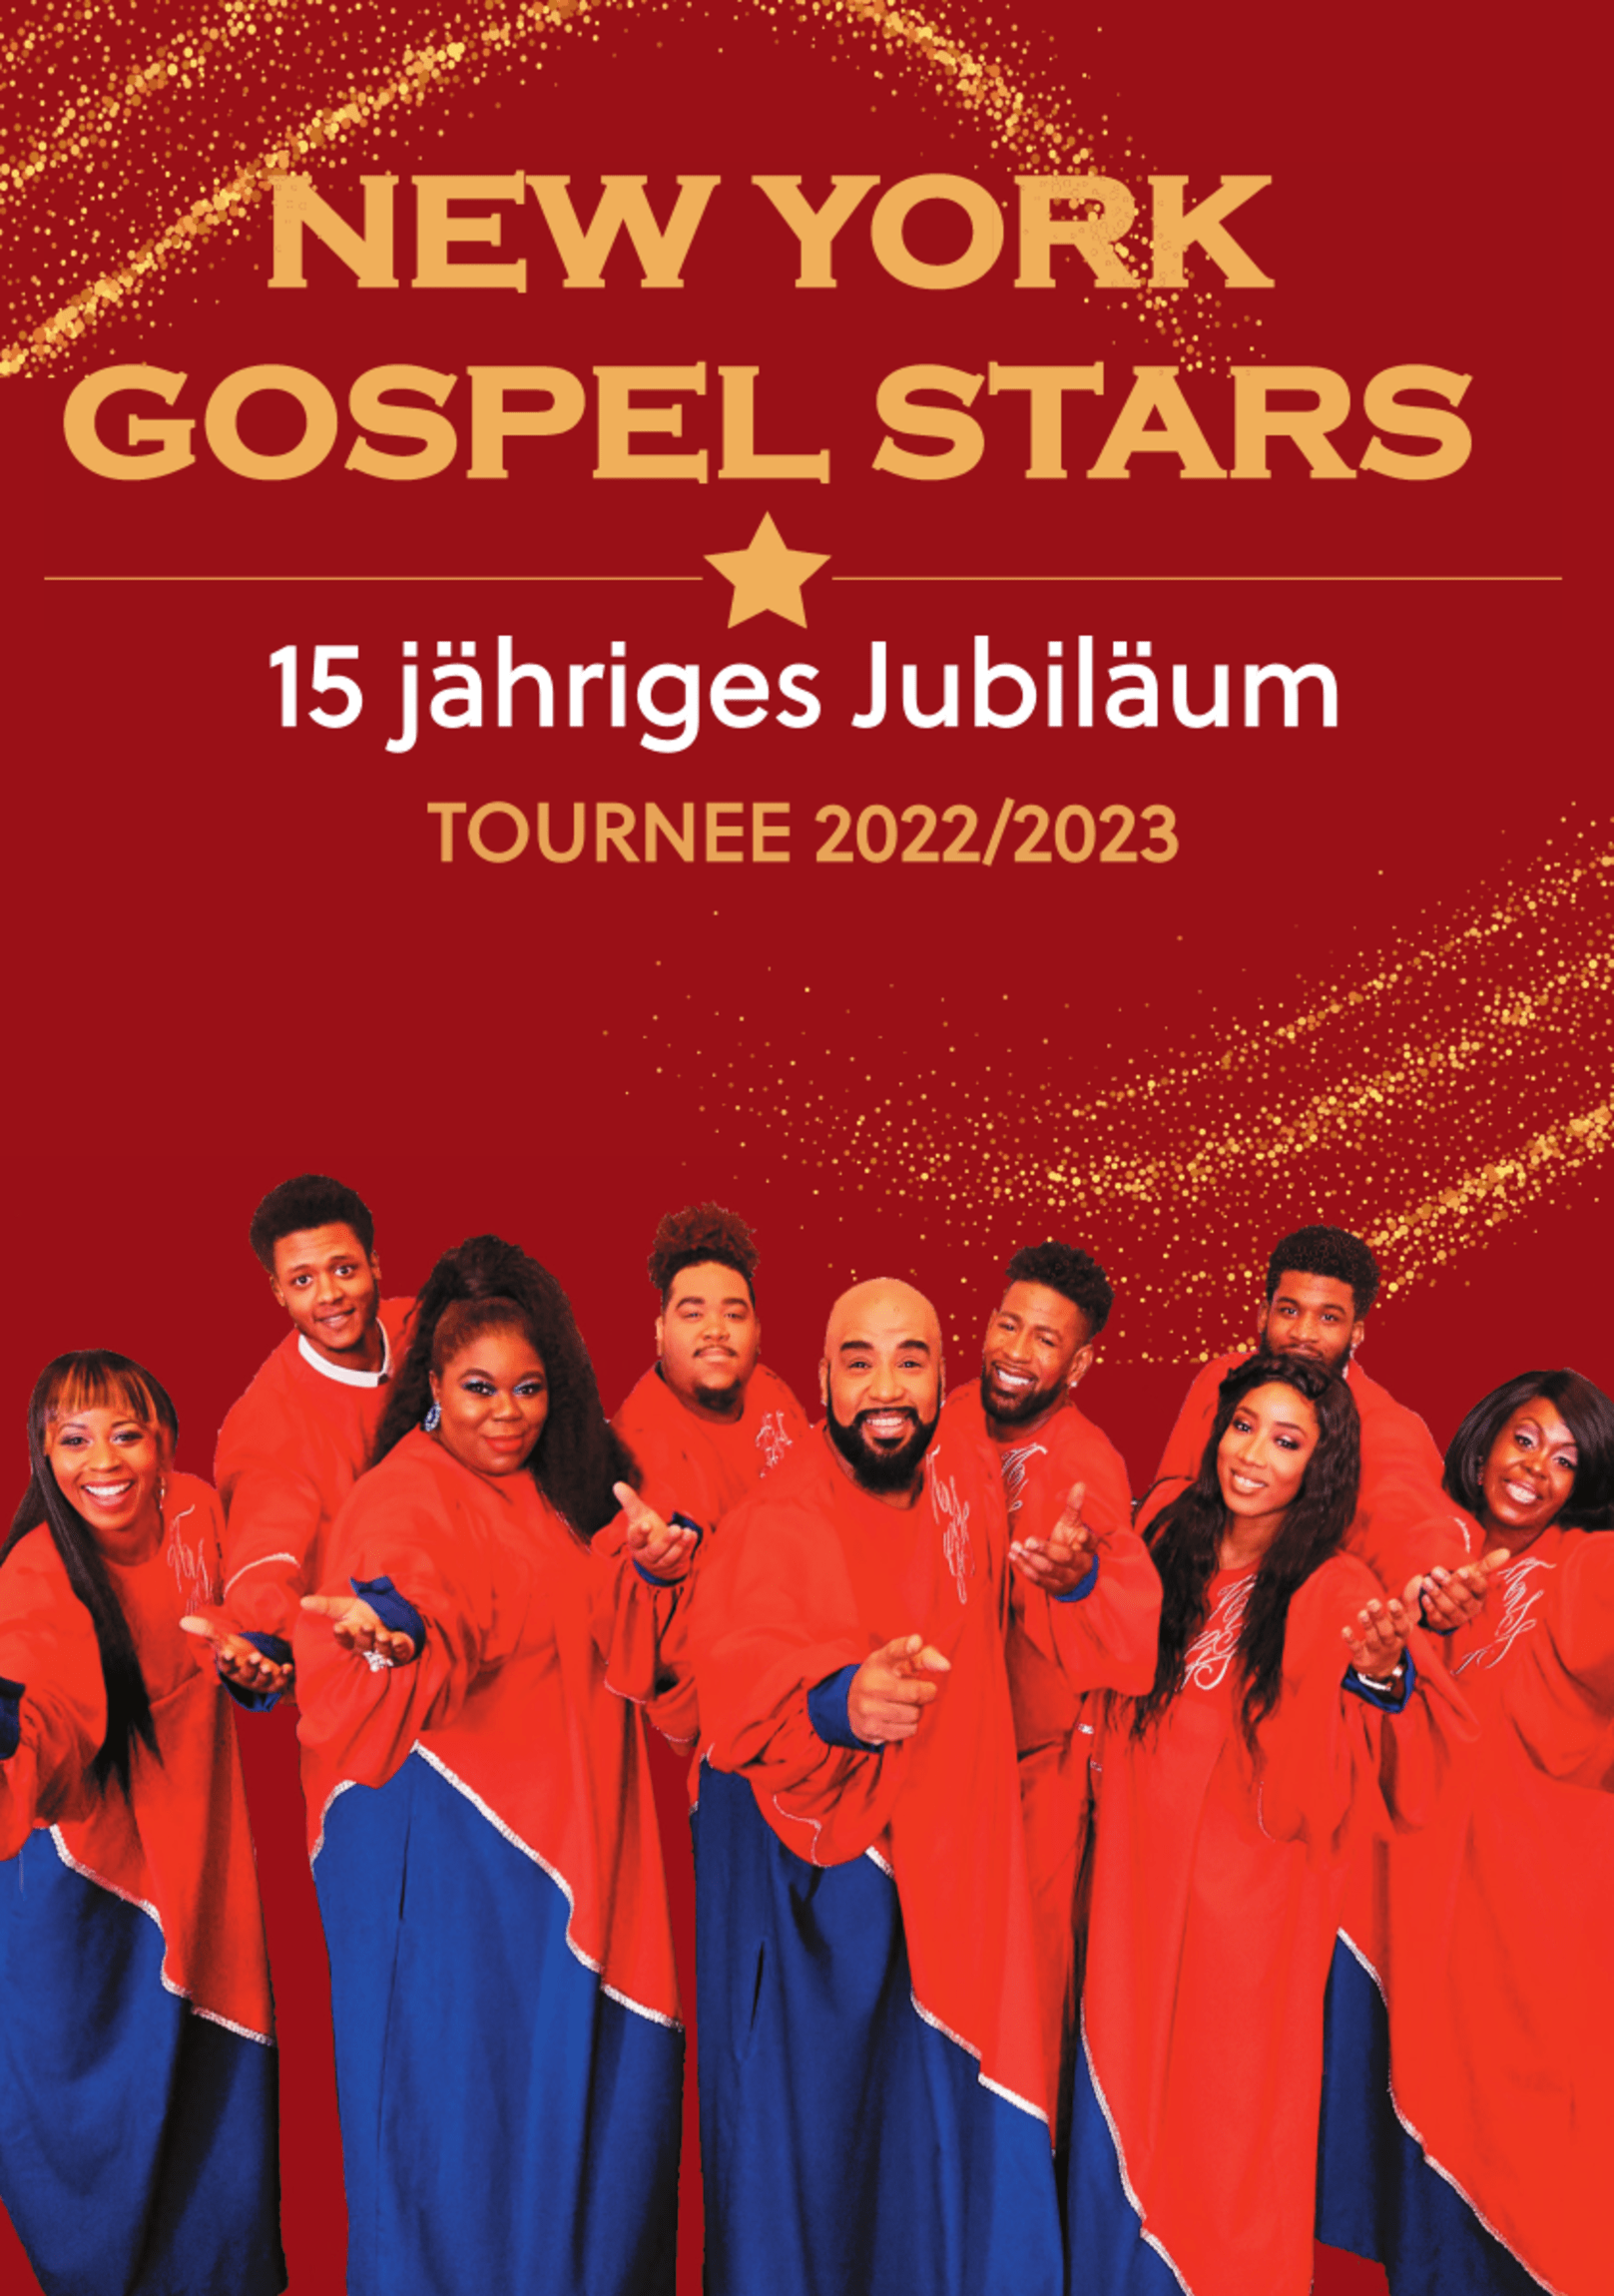 New York Gospel Stars - 15 Jahre - DIE Jubiläumstournee